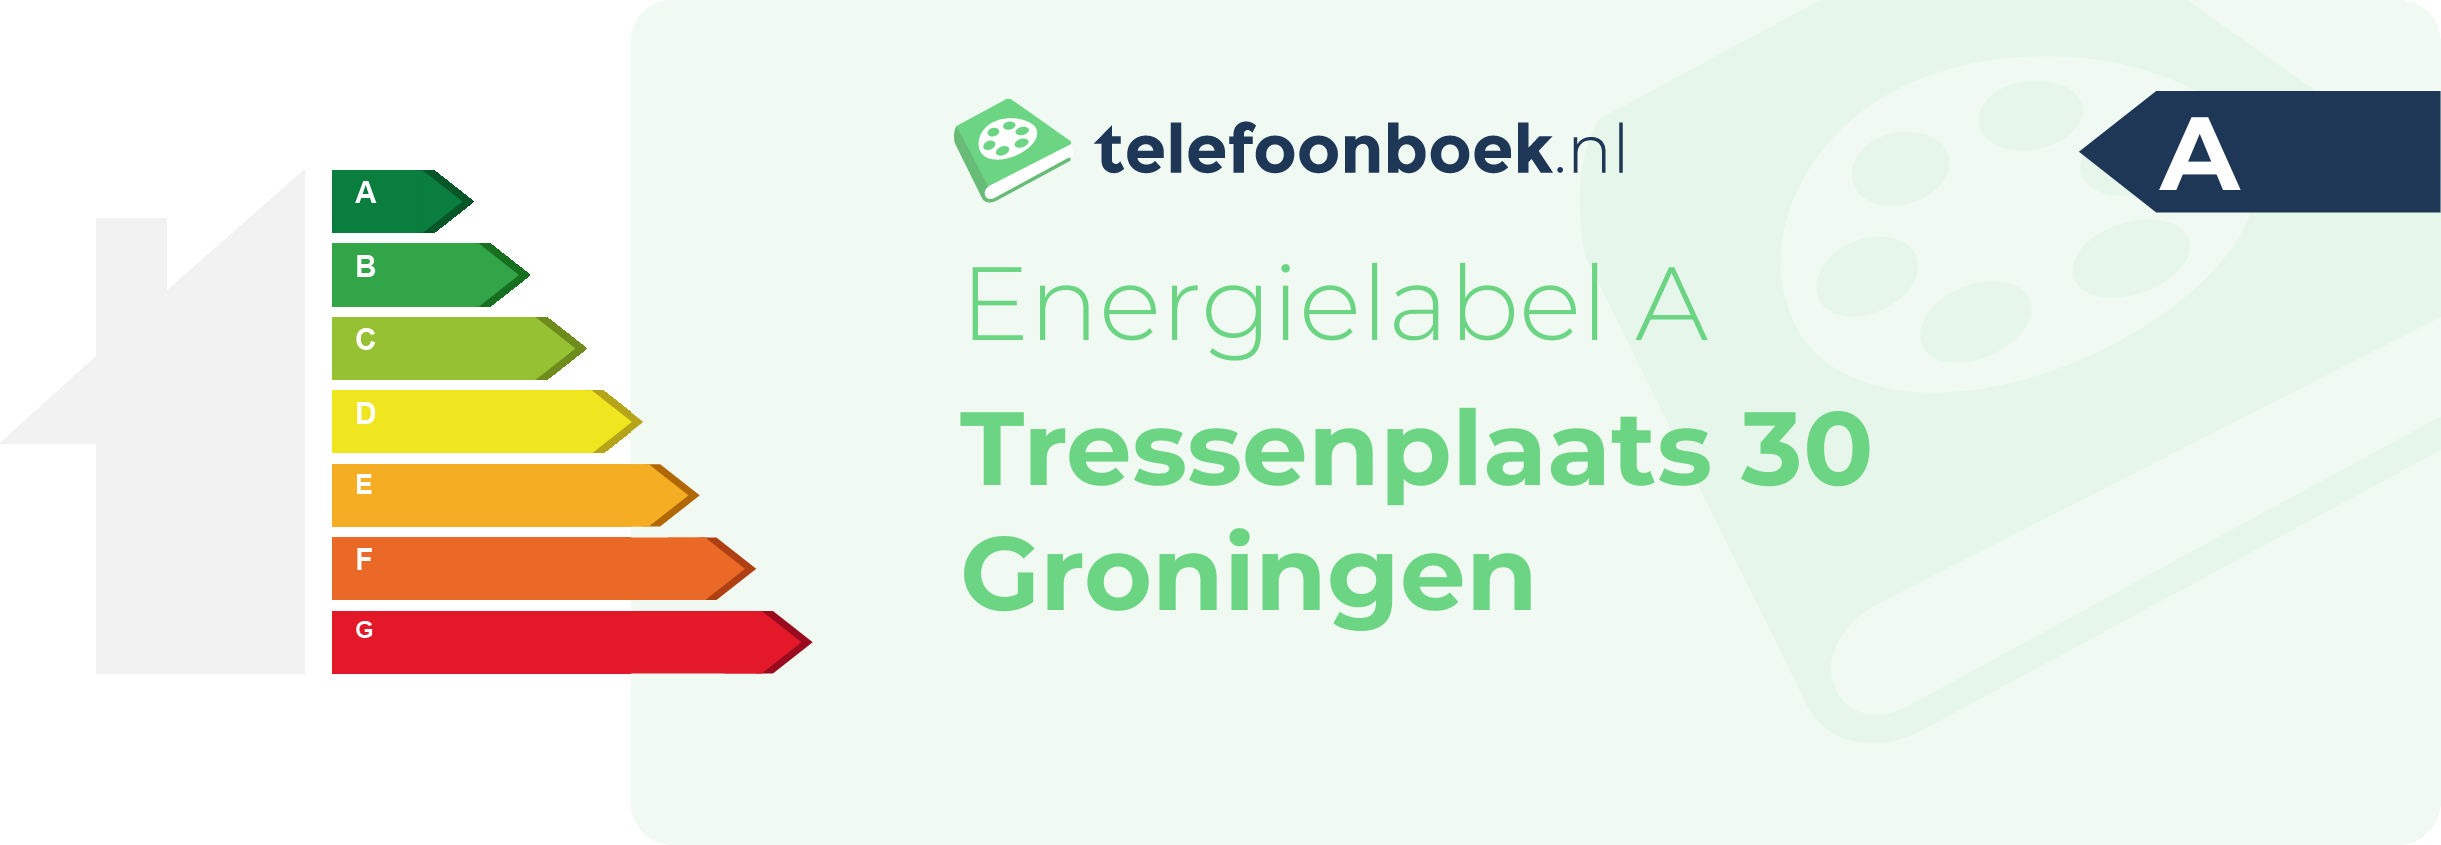 Energielabel Tressenplaats 30 Groningen